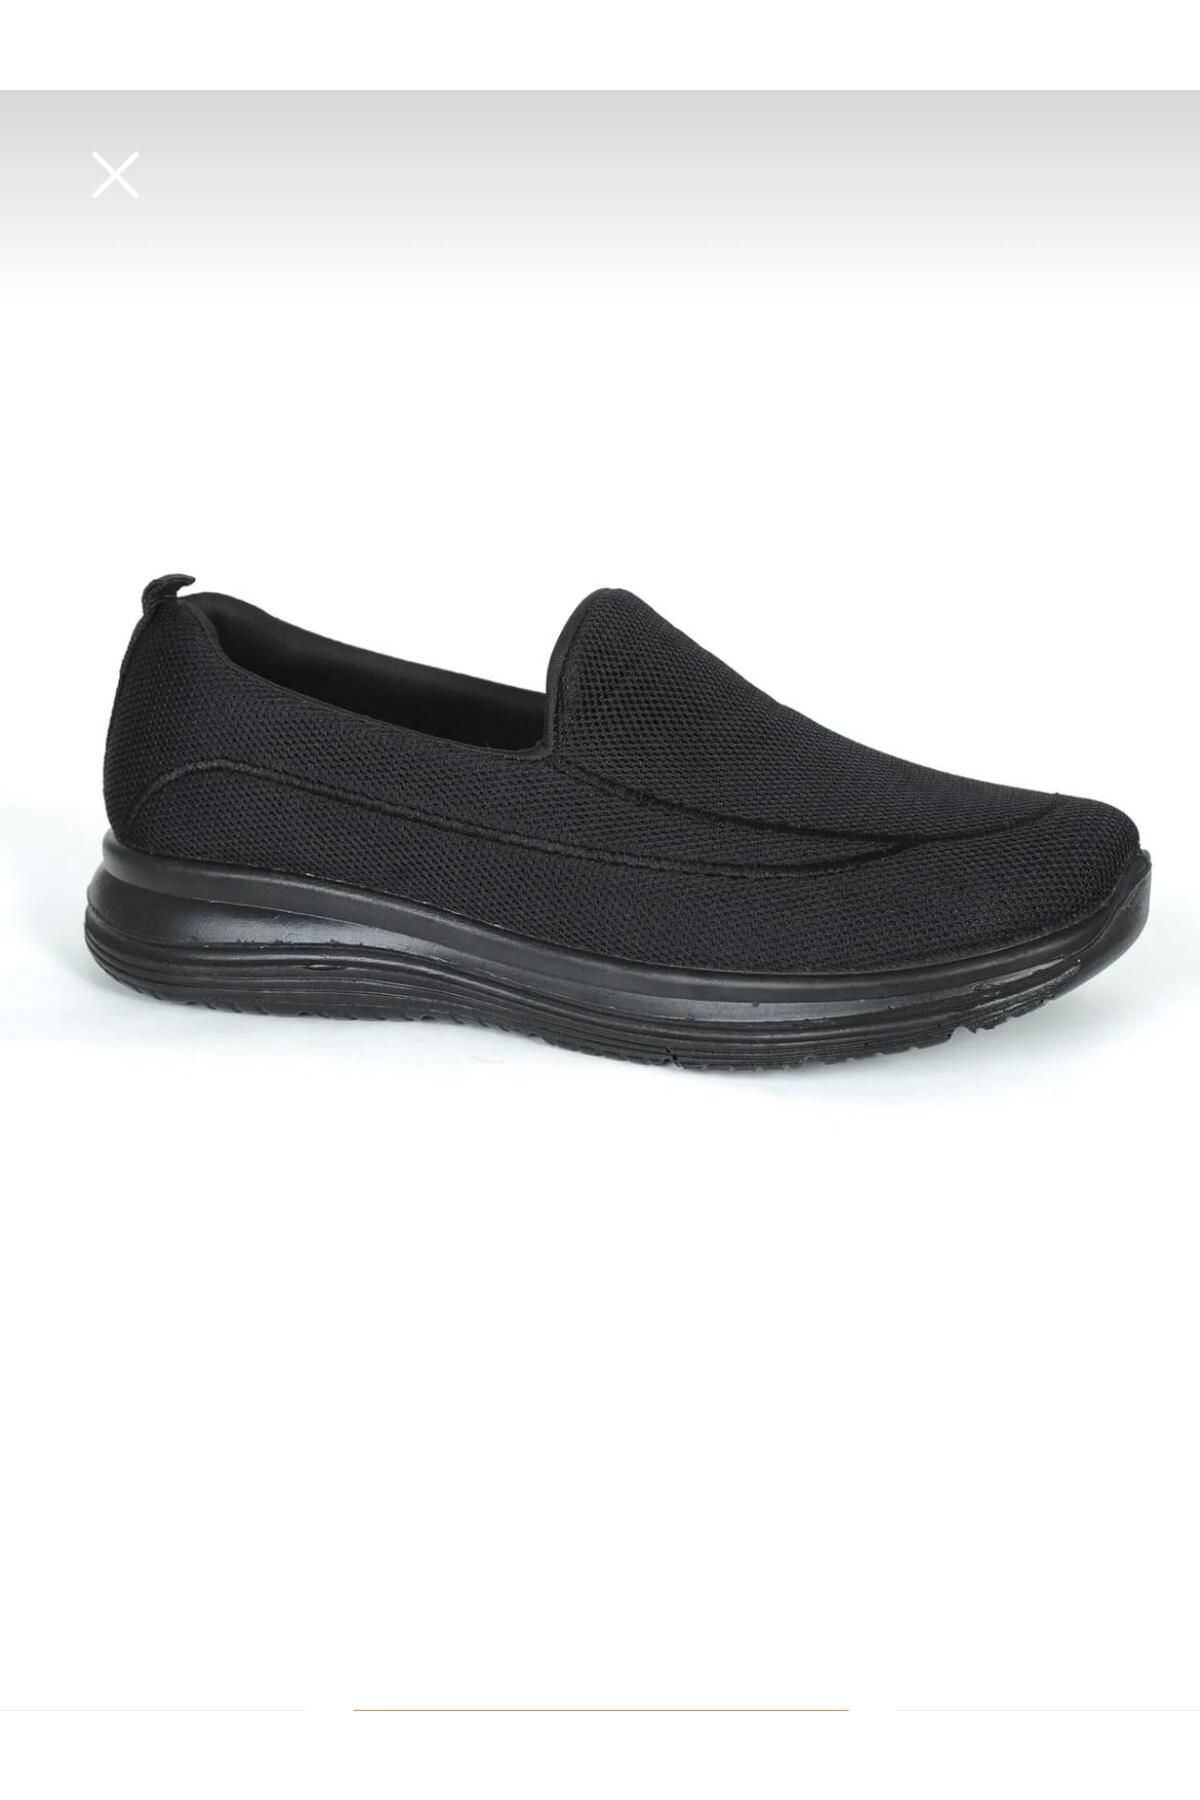 baytarzıN flov aqua ayakkqbı siyah yürüyüş ayakkabısı baba ayakkabısı sneakers rahat sağlam ortapedik